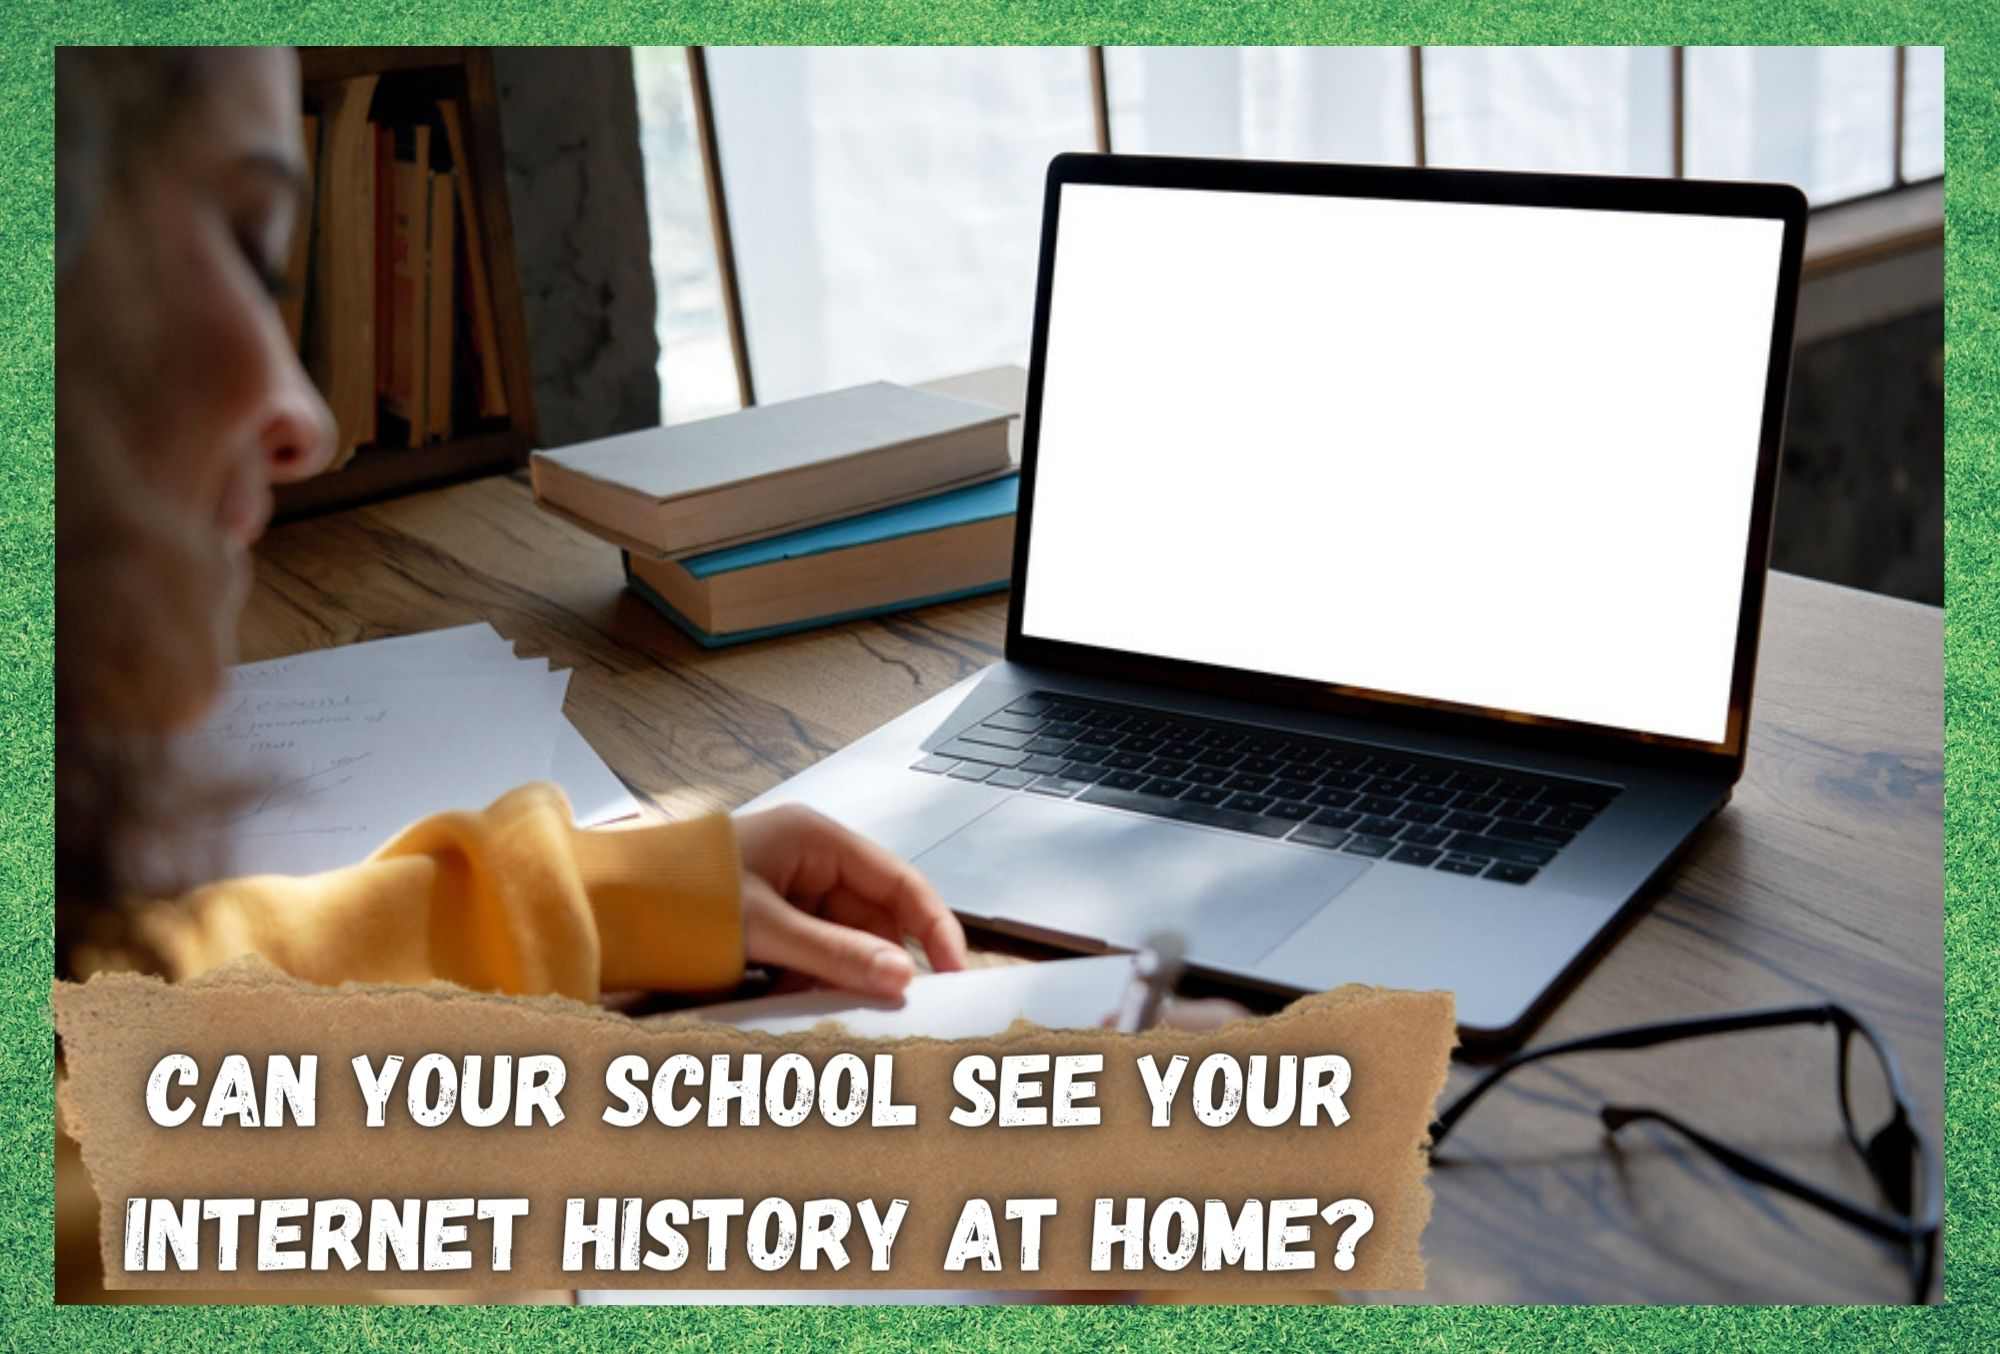 آیا مدرسه شما می تواند تاریخچه اینترنت شما را در خانه ببیند؟